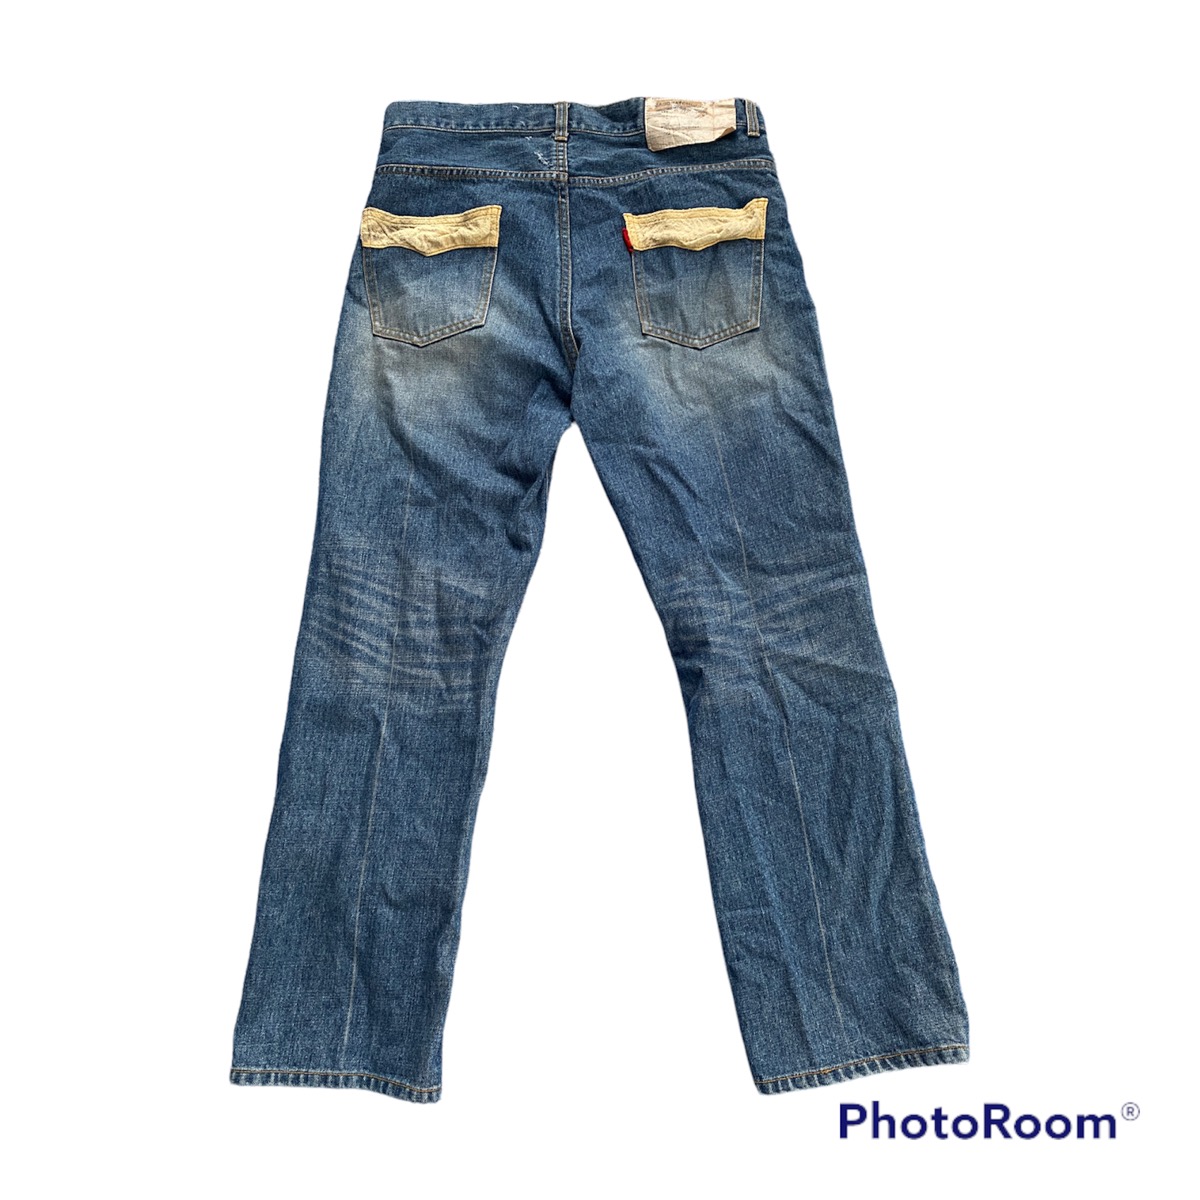 sasquatchfabrix jeans denim old cotton pants - 2